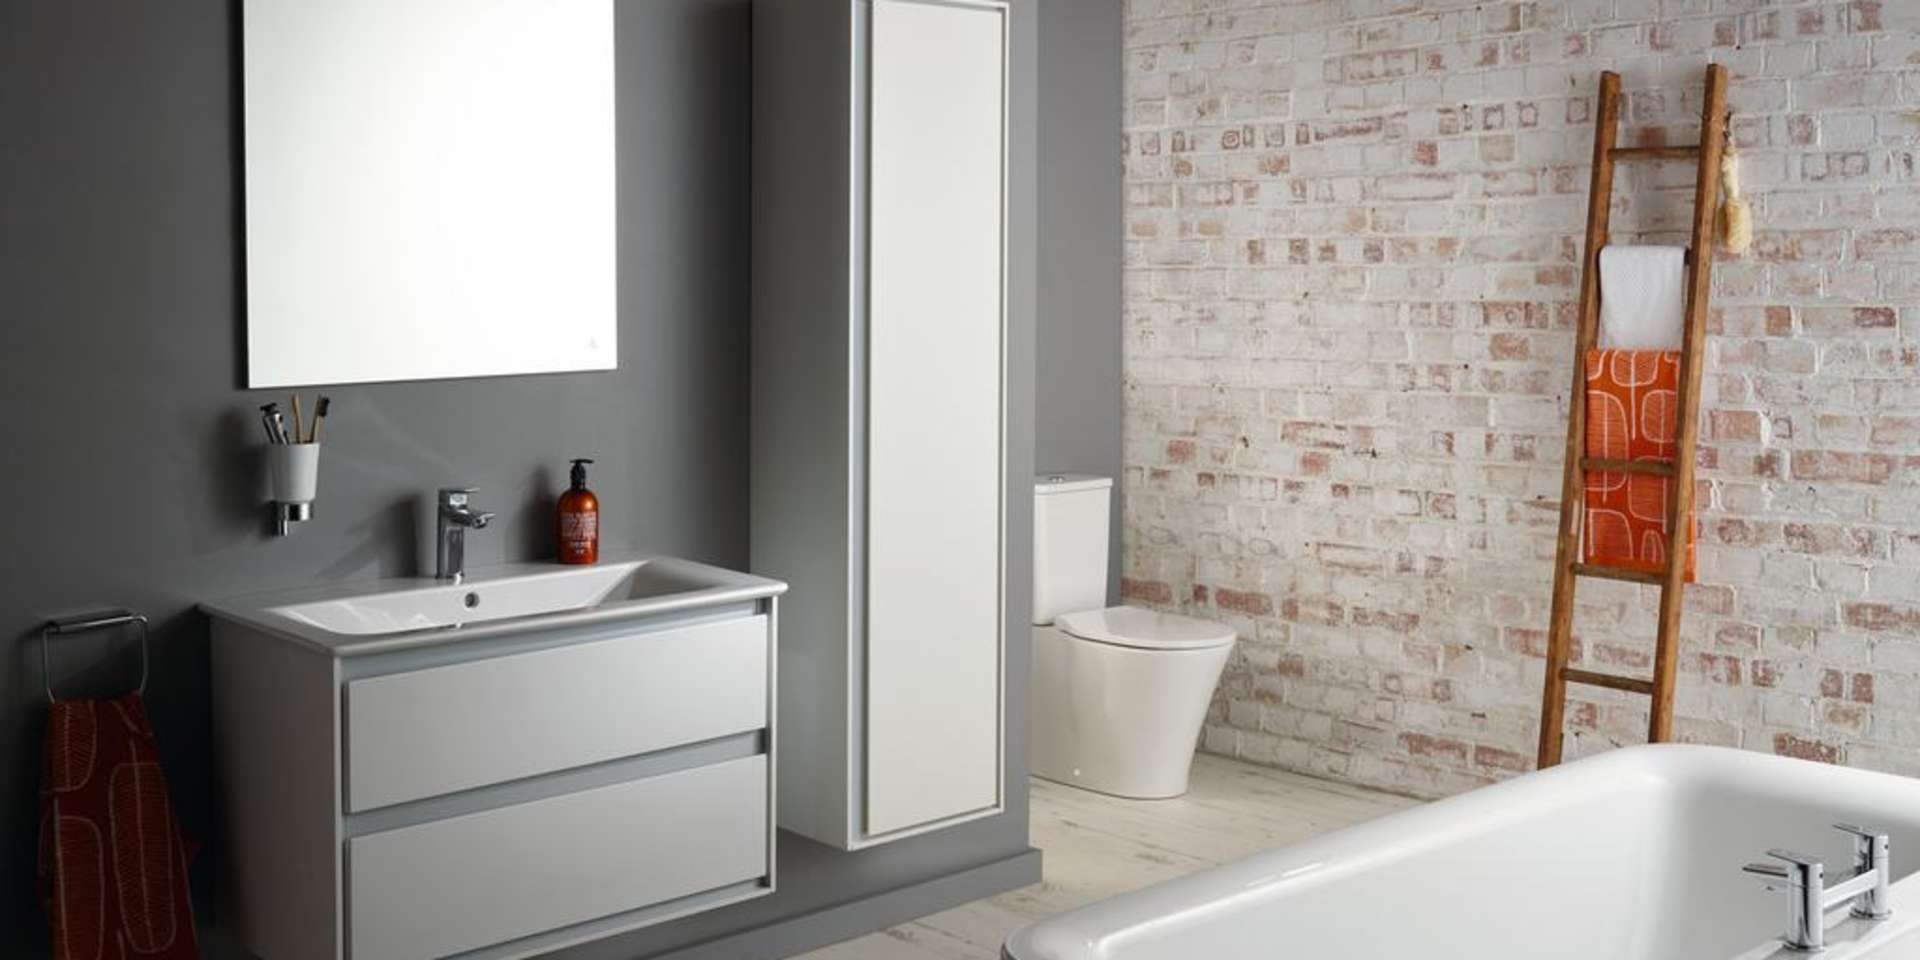 Skab de bedste øjeblikke på badeværelset med Ideal Standard & Børma